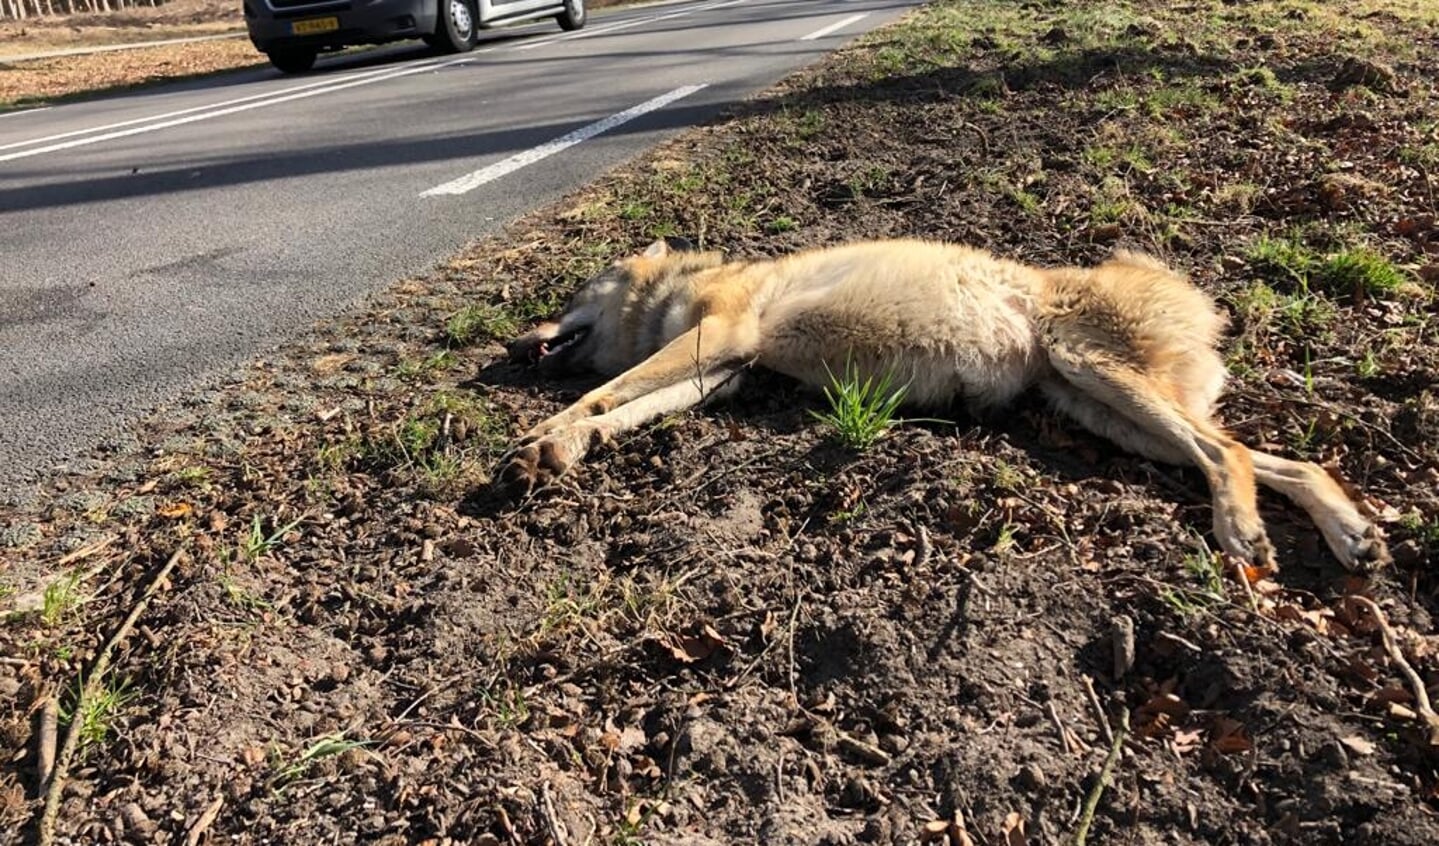 De doodgereden wolvin op de weg tussen Ede en Arnhem.